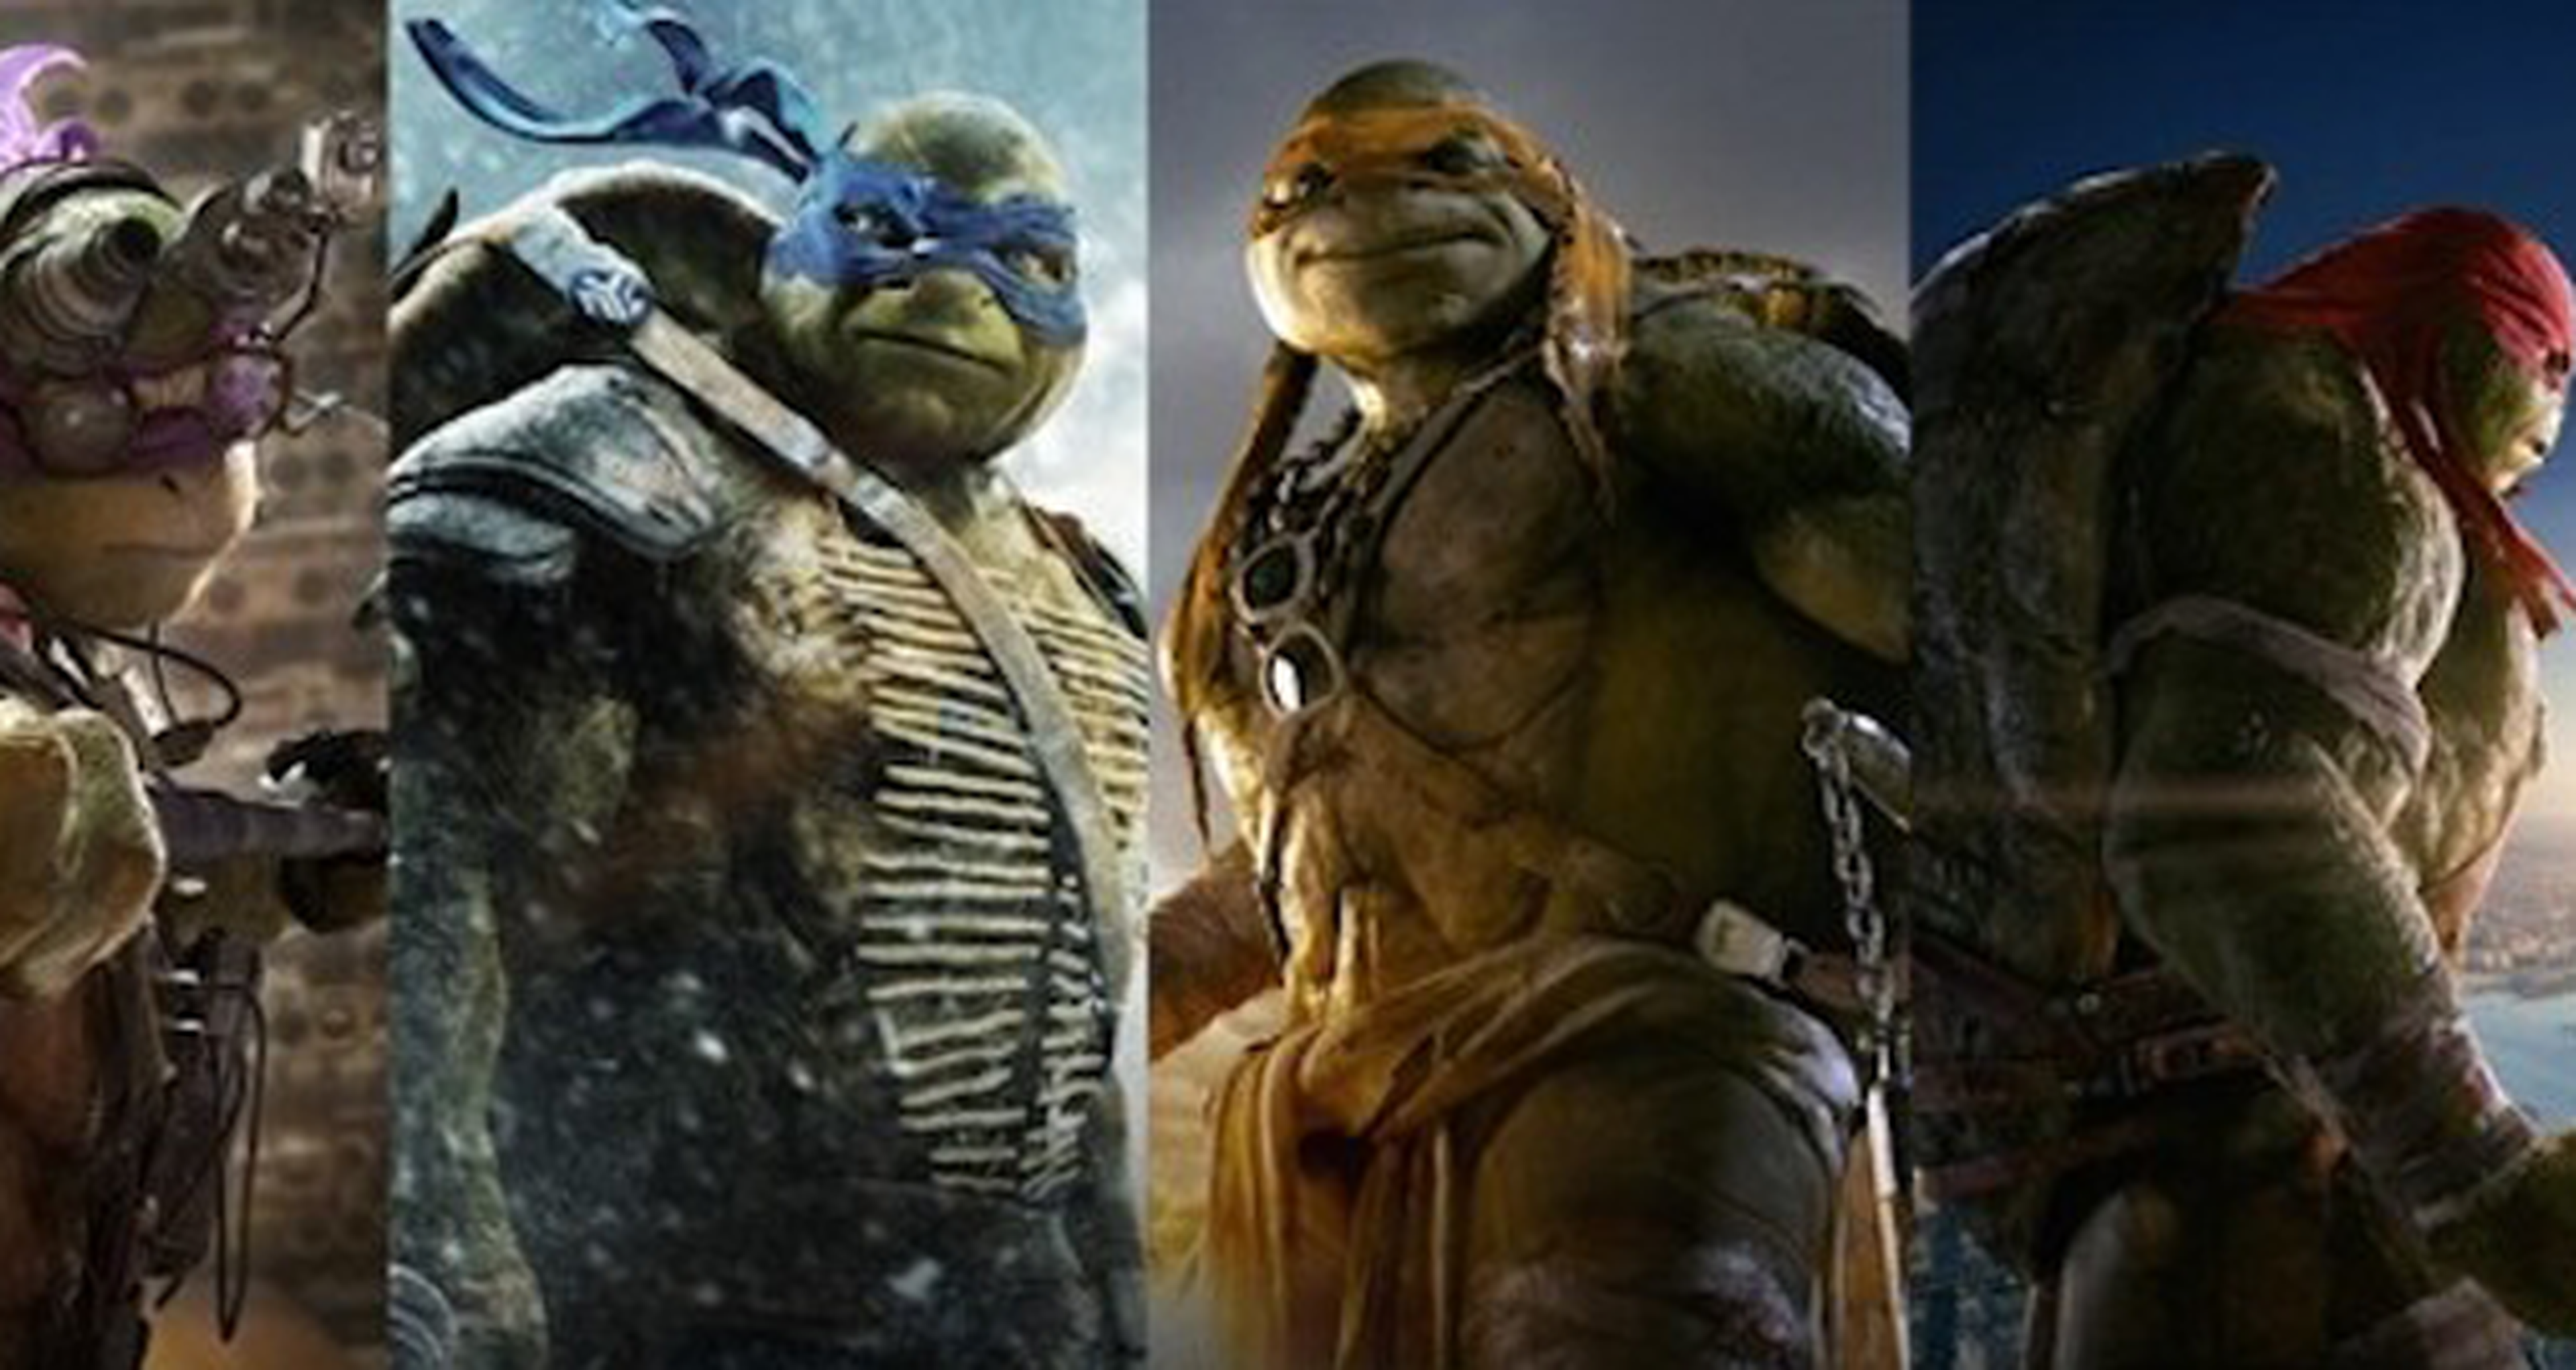 La evolución de las Tortugas Ninja